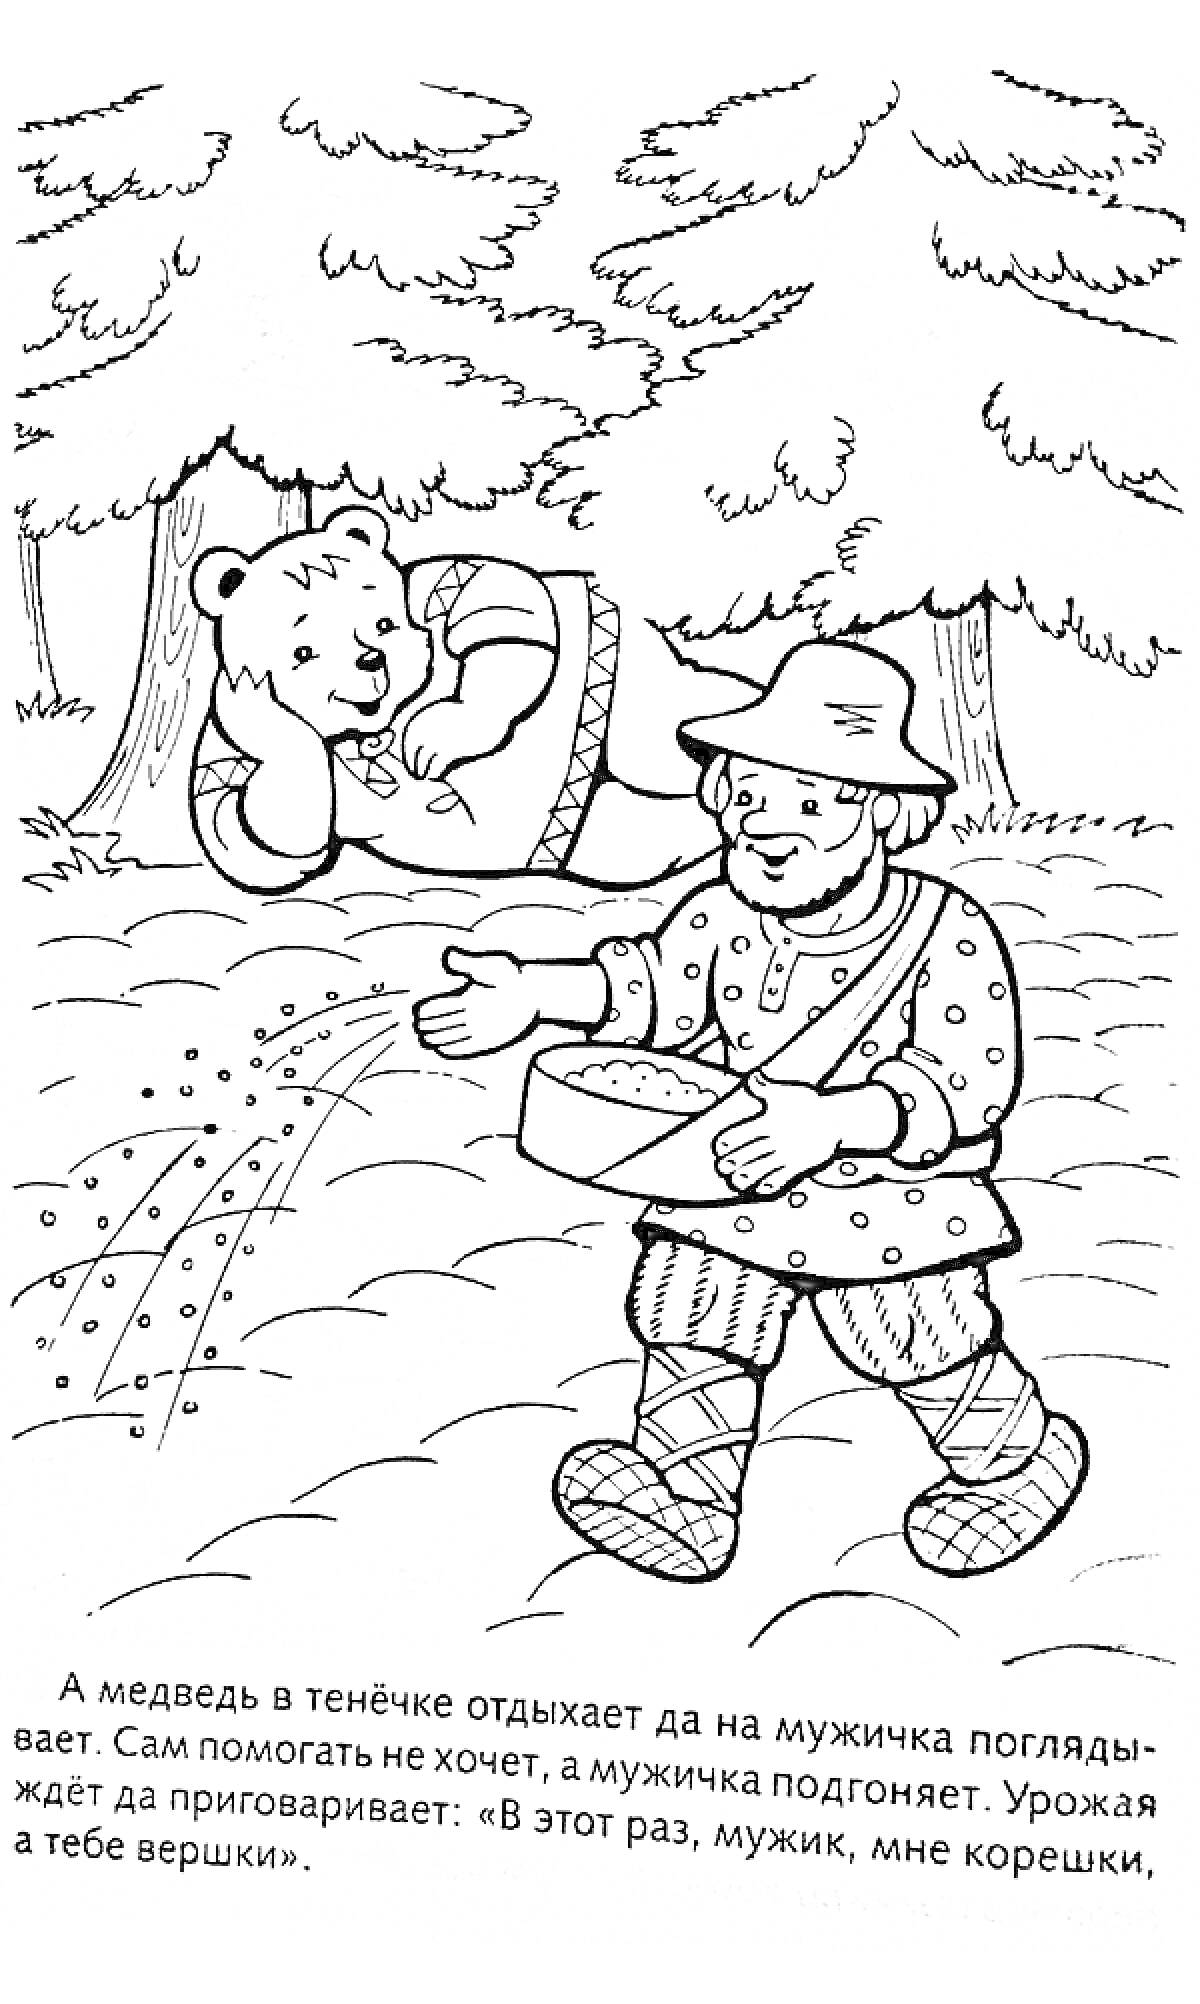 РаскраскаМужик сеет семена, а медведь отдыхает под деревом.